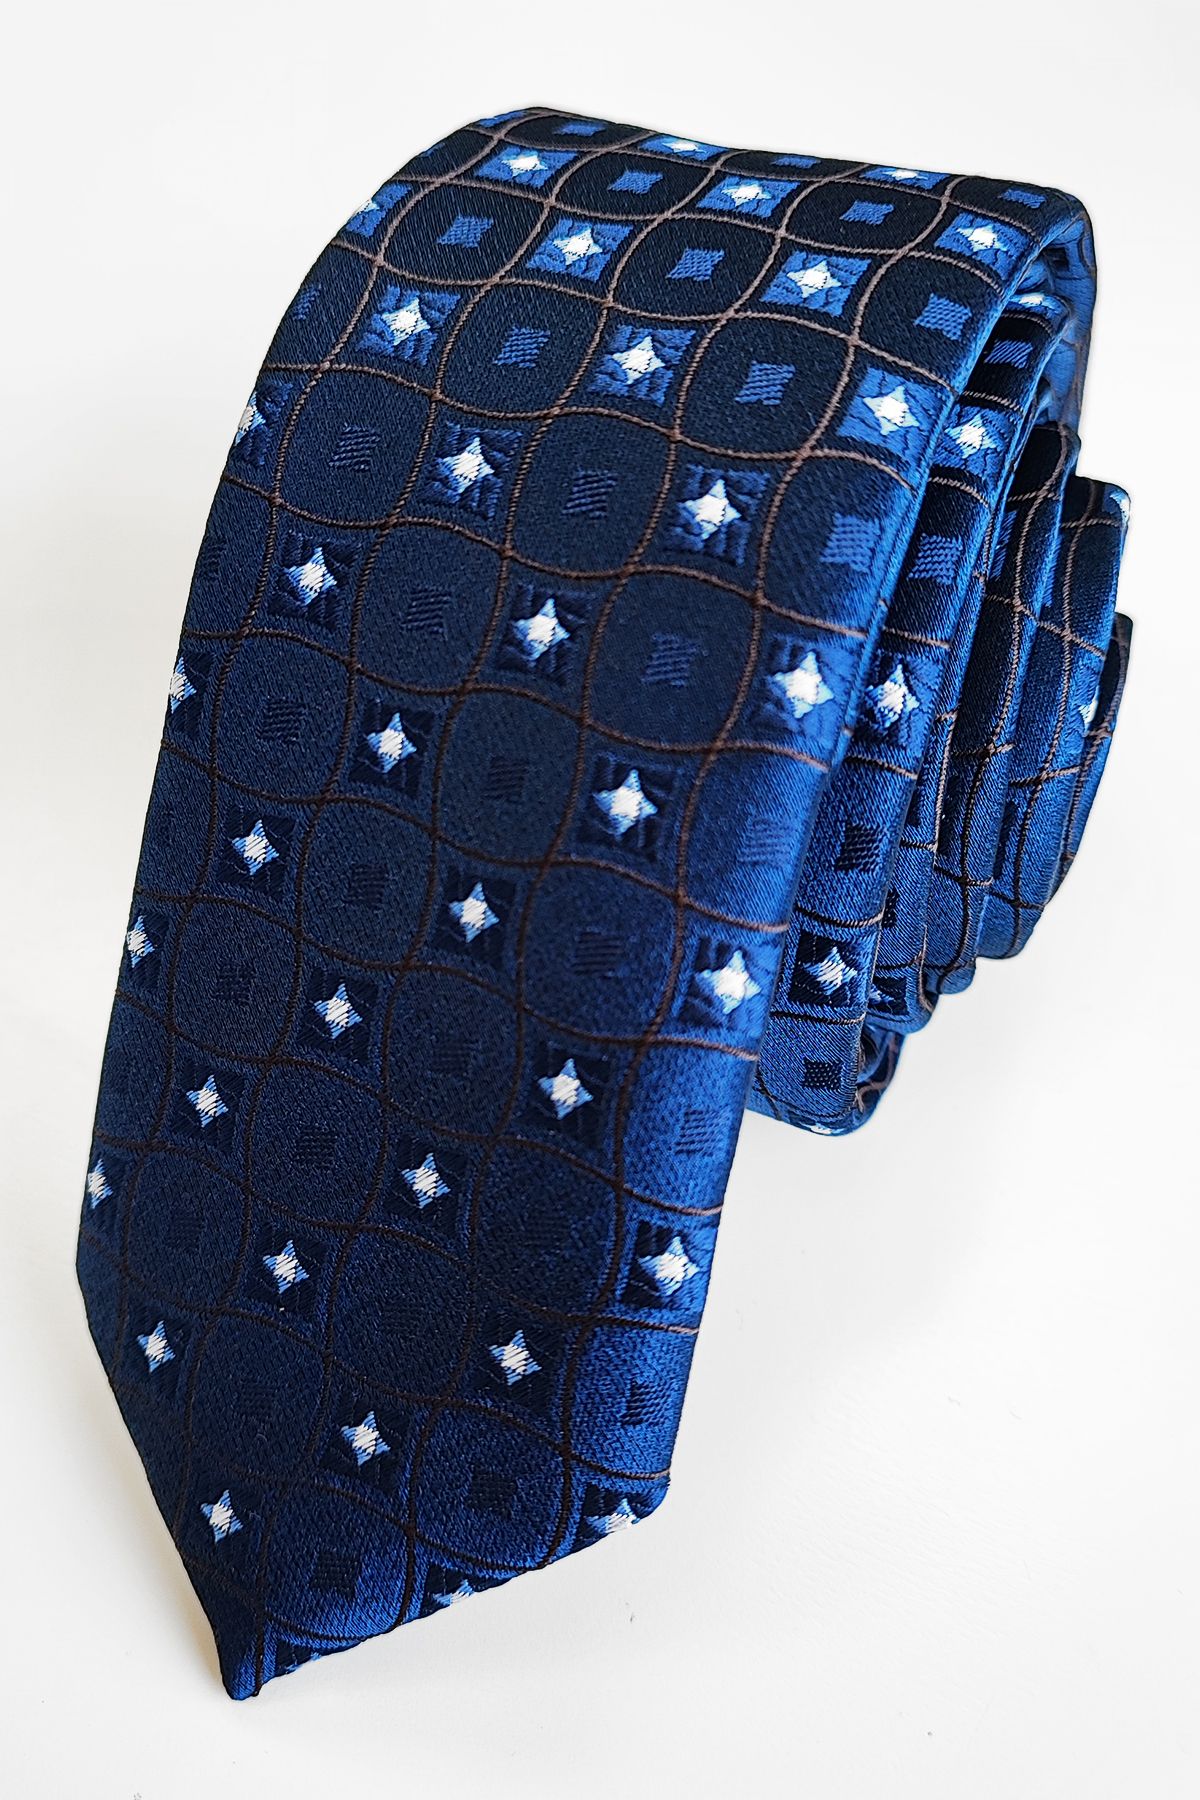 PATTERNED nyakkendő (w-091) slim